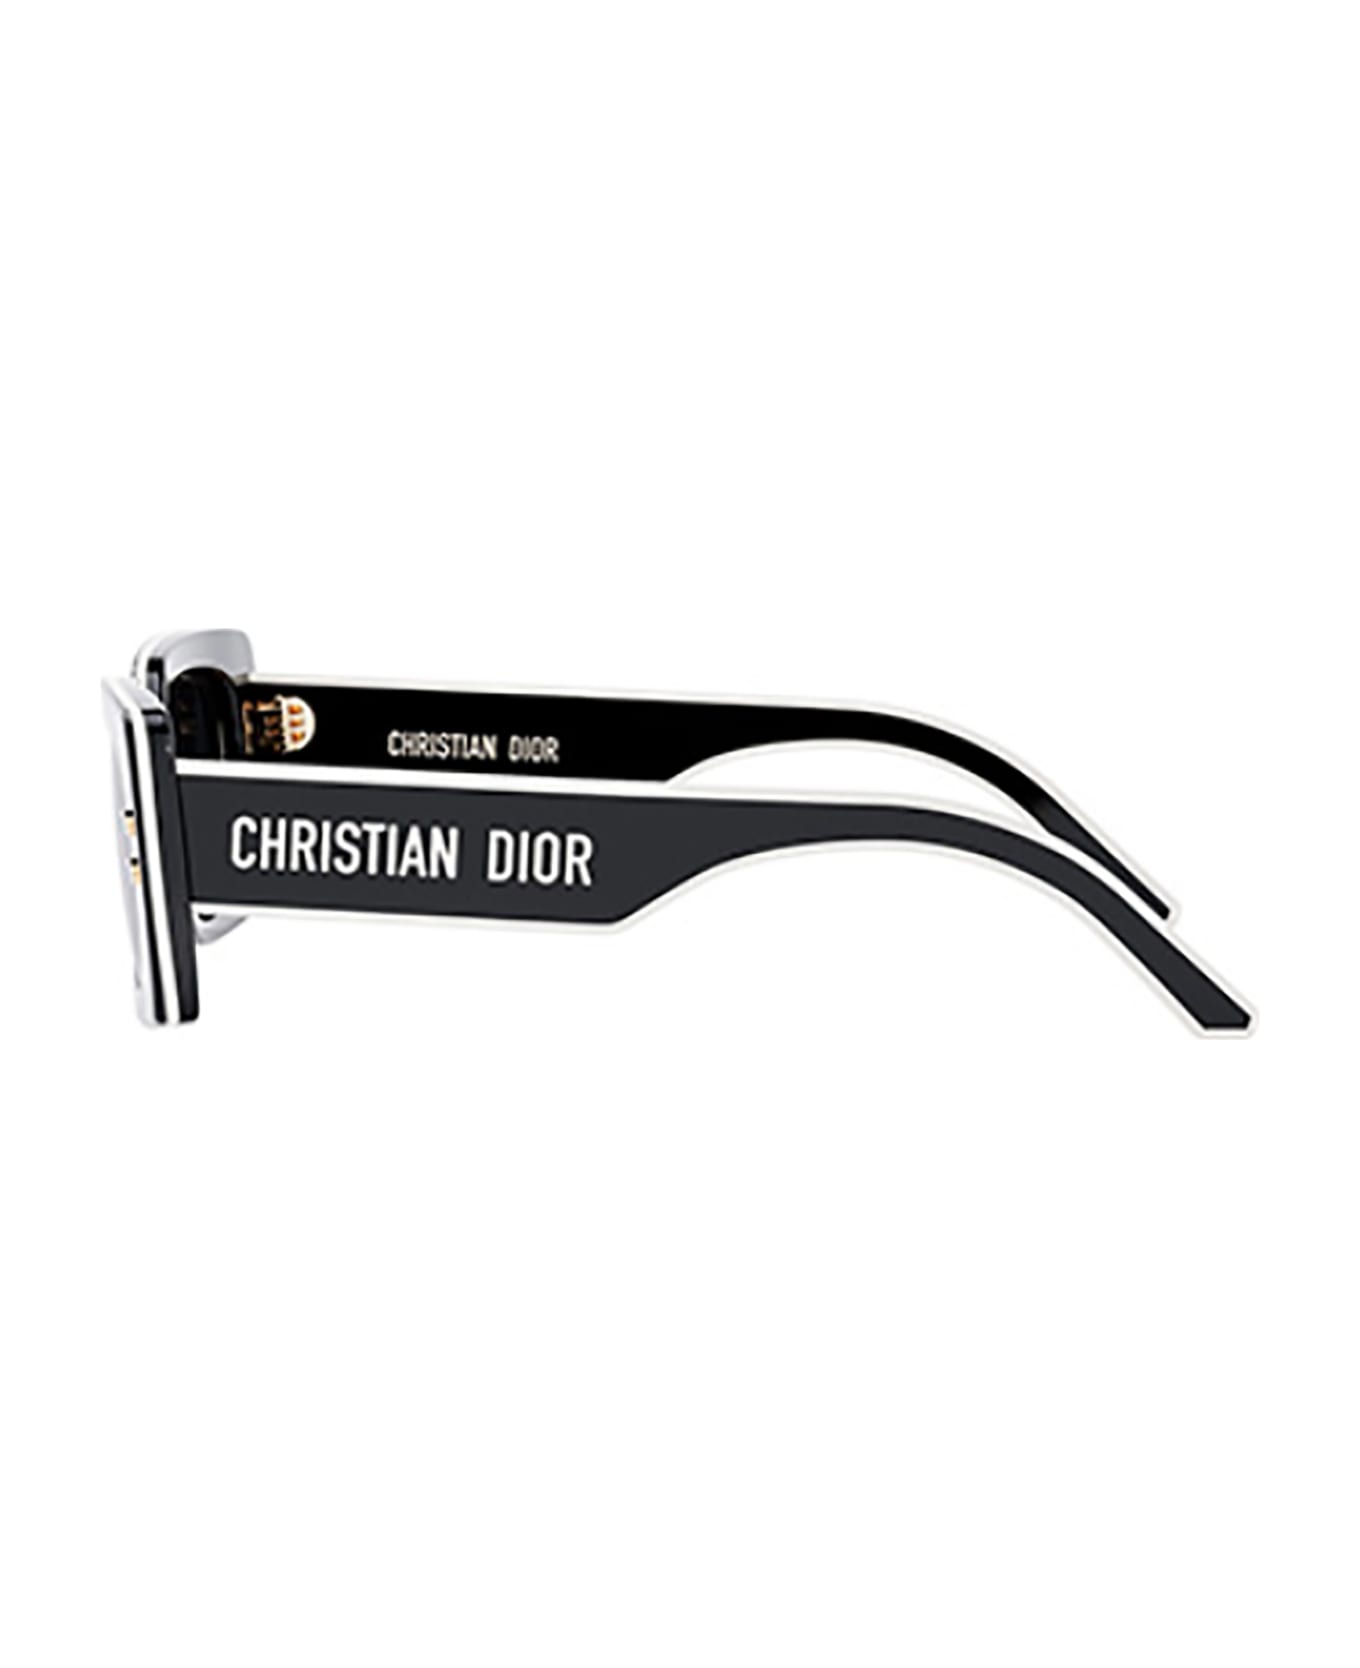 Dior PACIFIC S1U Sunglasses